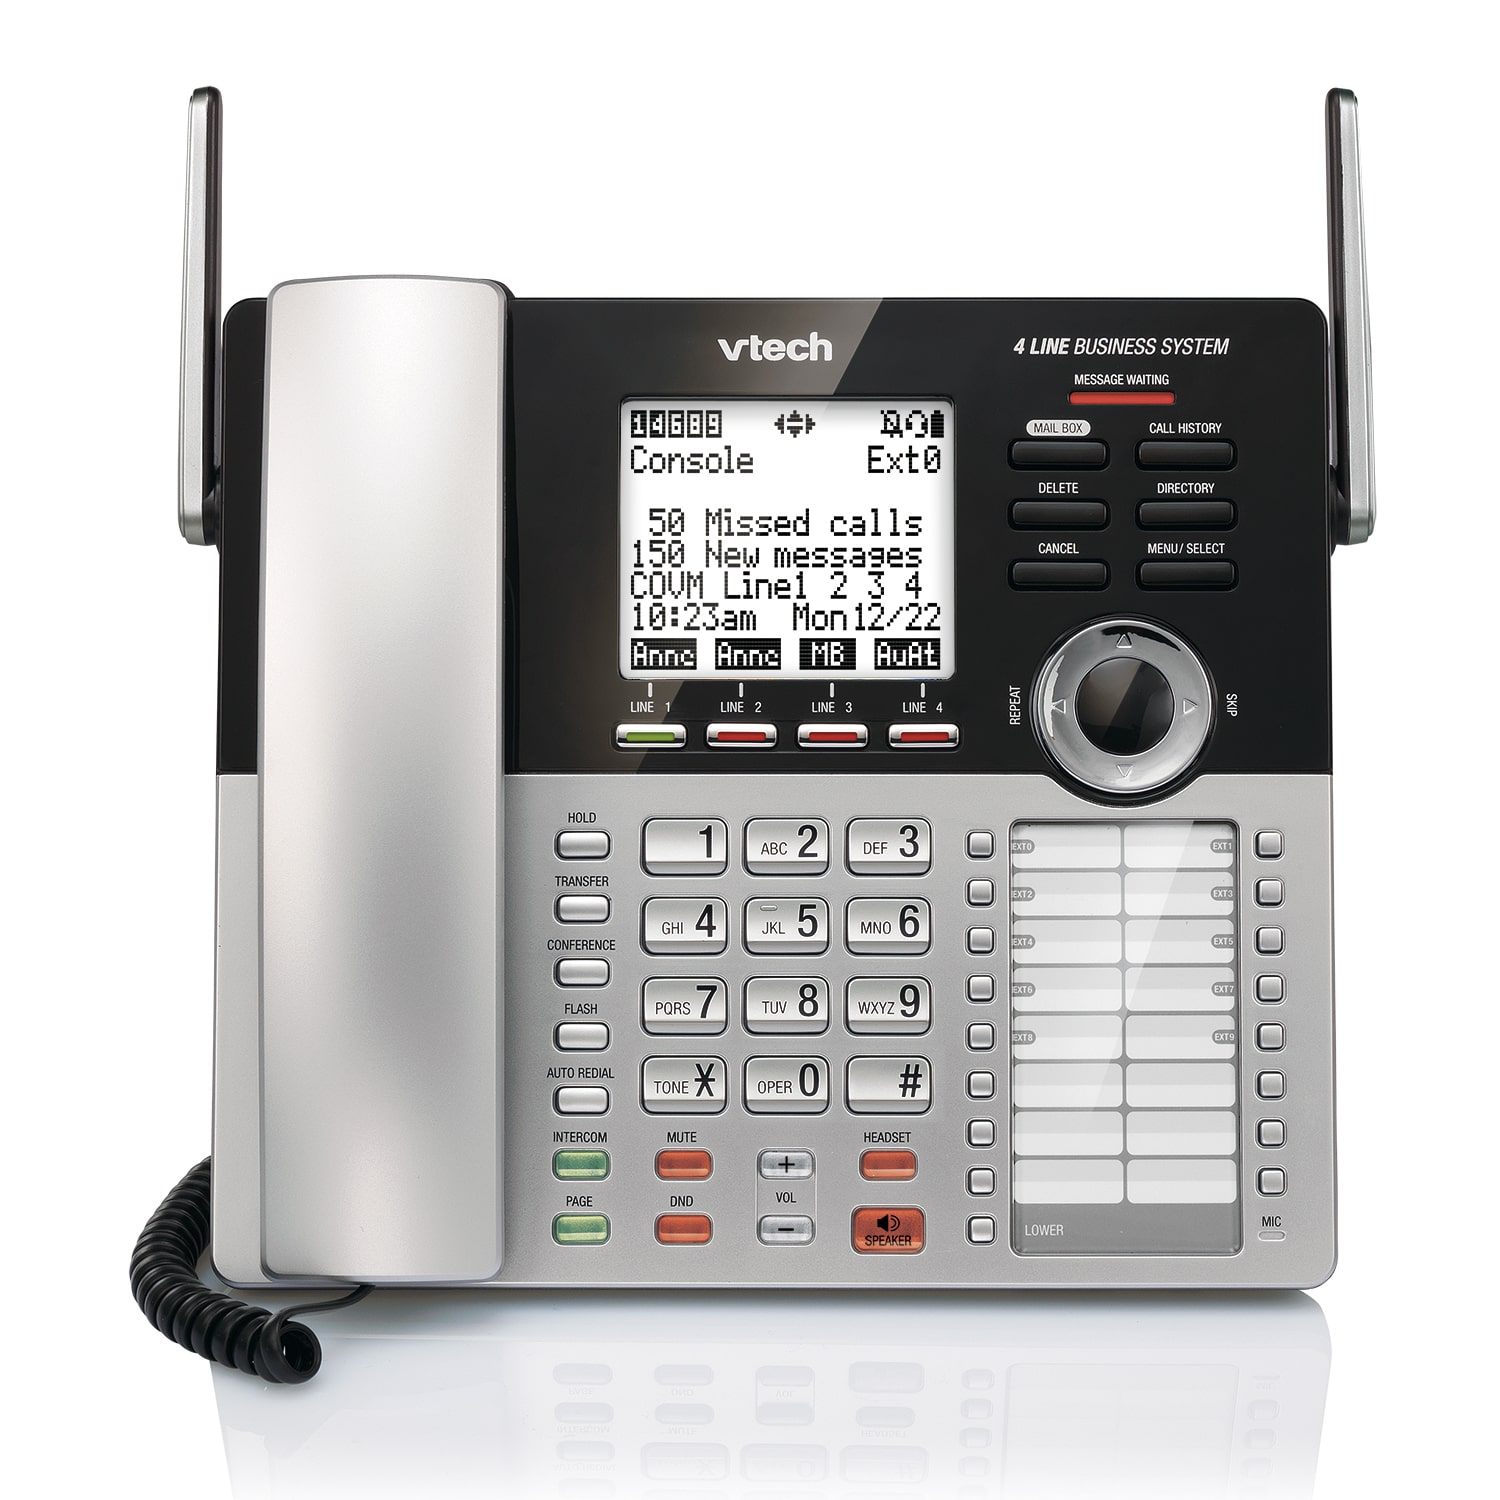 Console principale Systeme telephone a quatre lignes pour petites entreprises de VTech